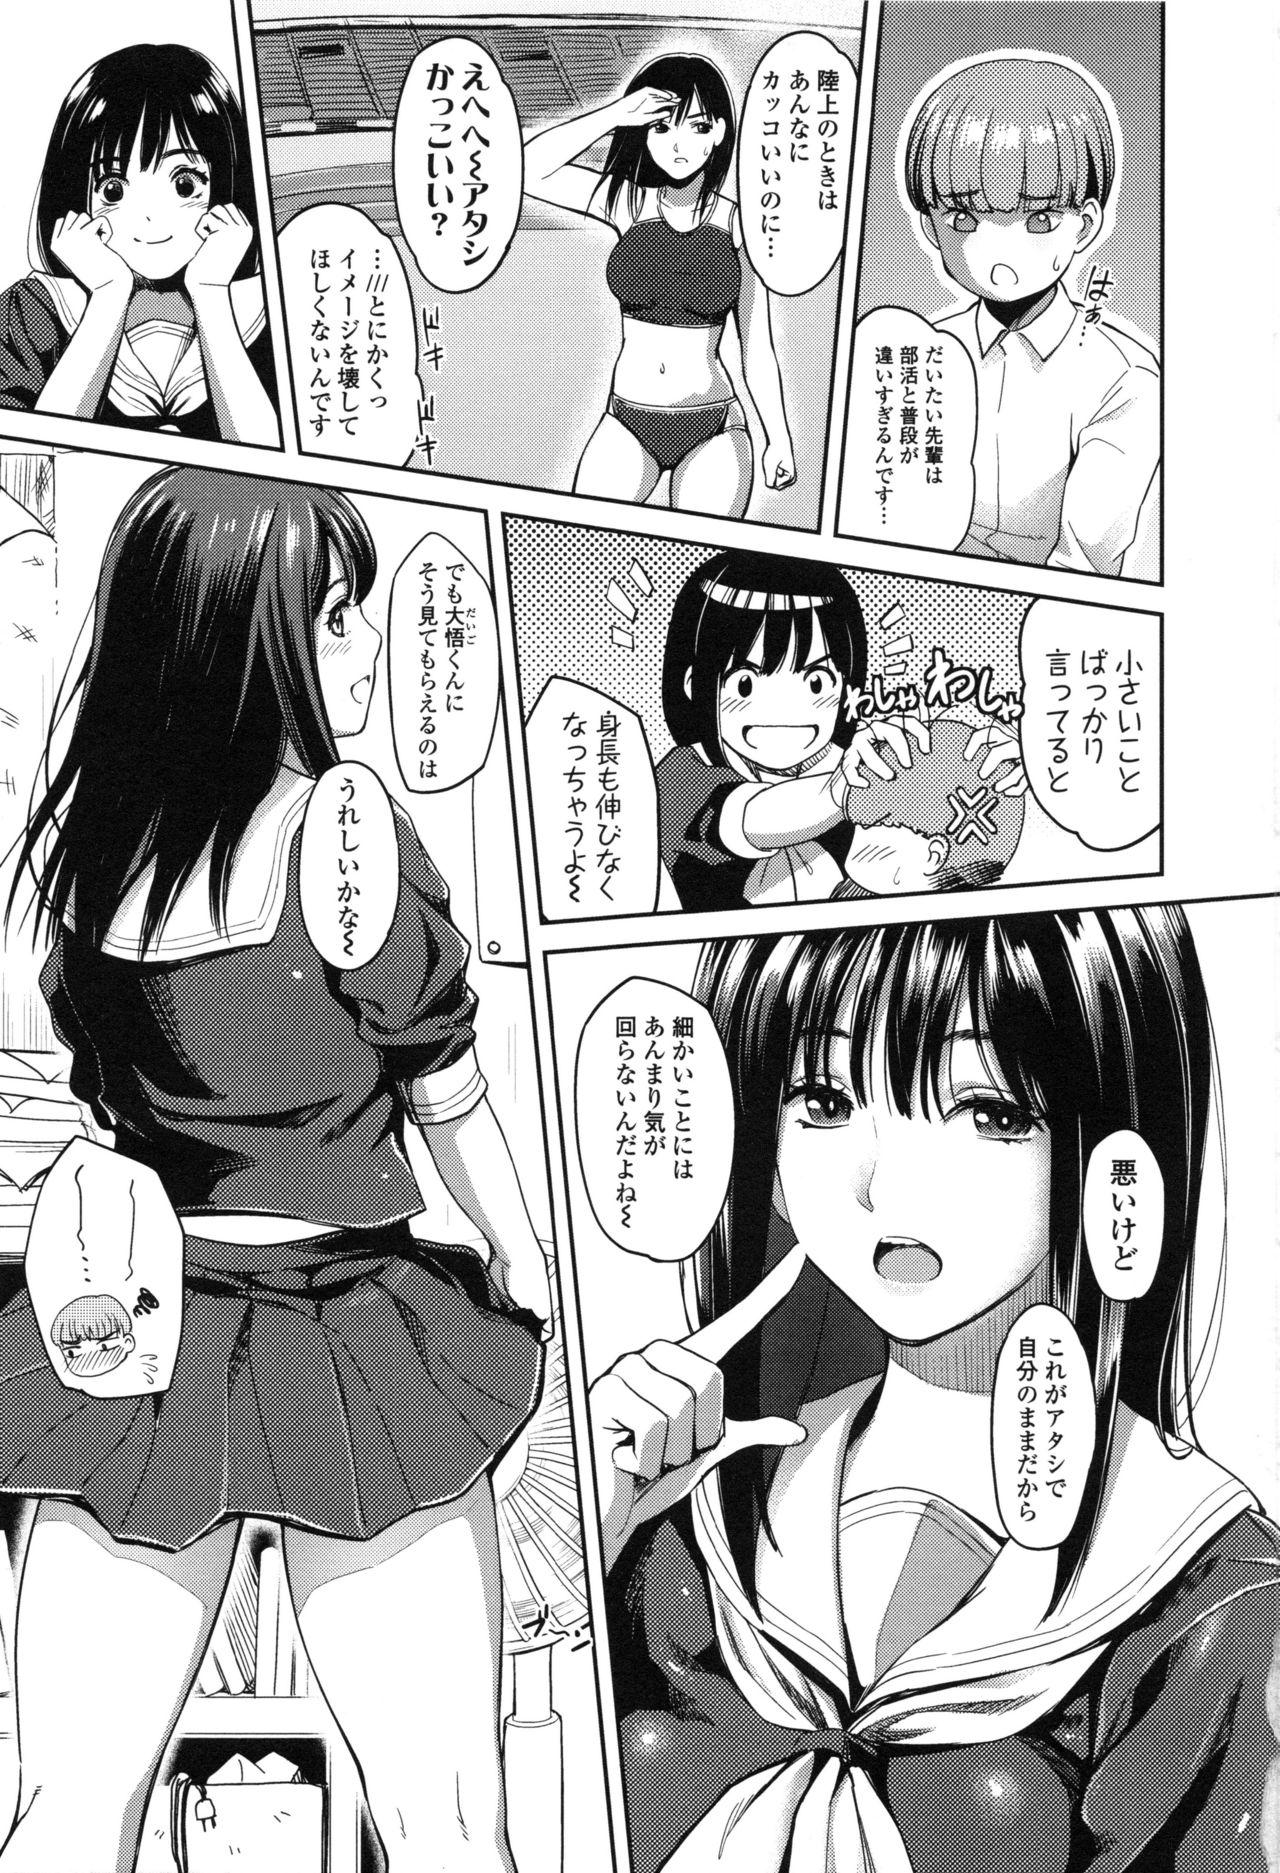 Seifuku no Mama Aishinasai! - Love in school uniform 110